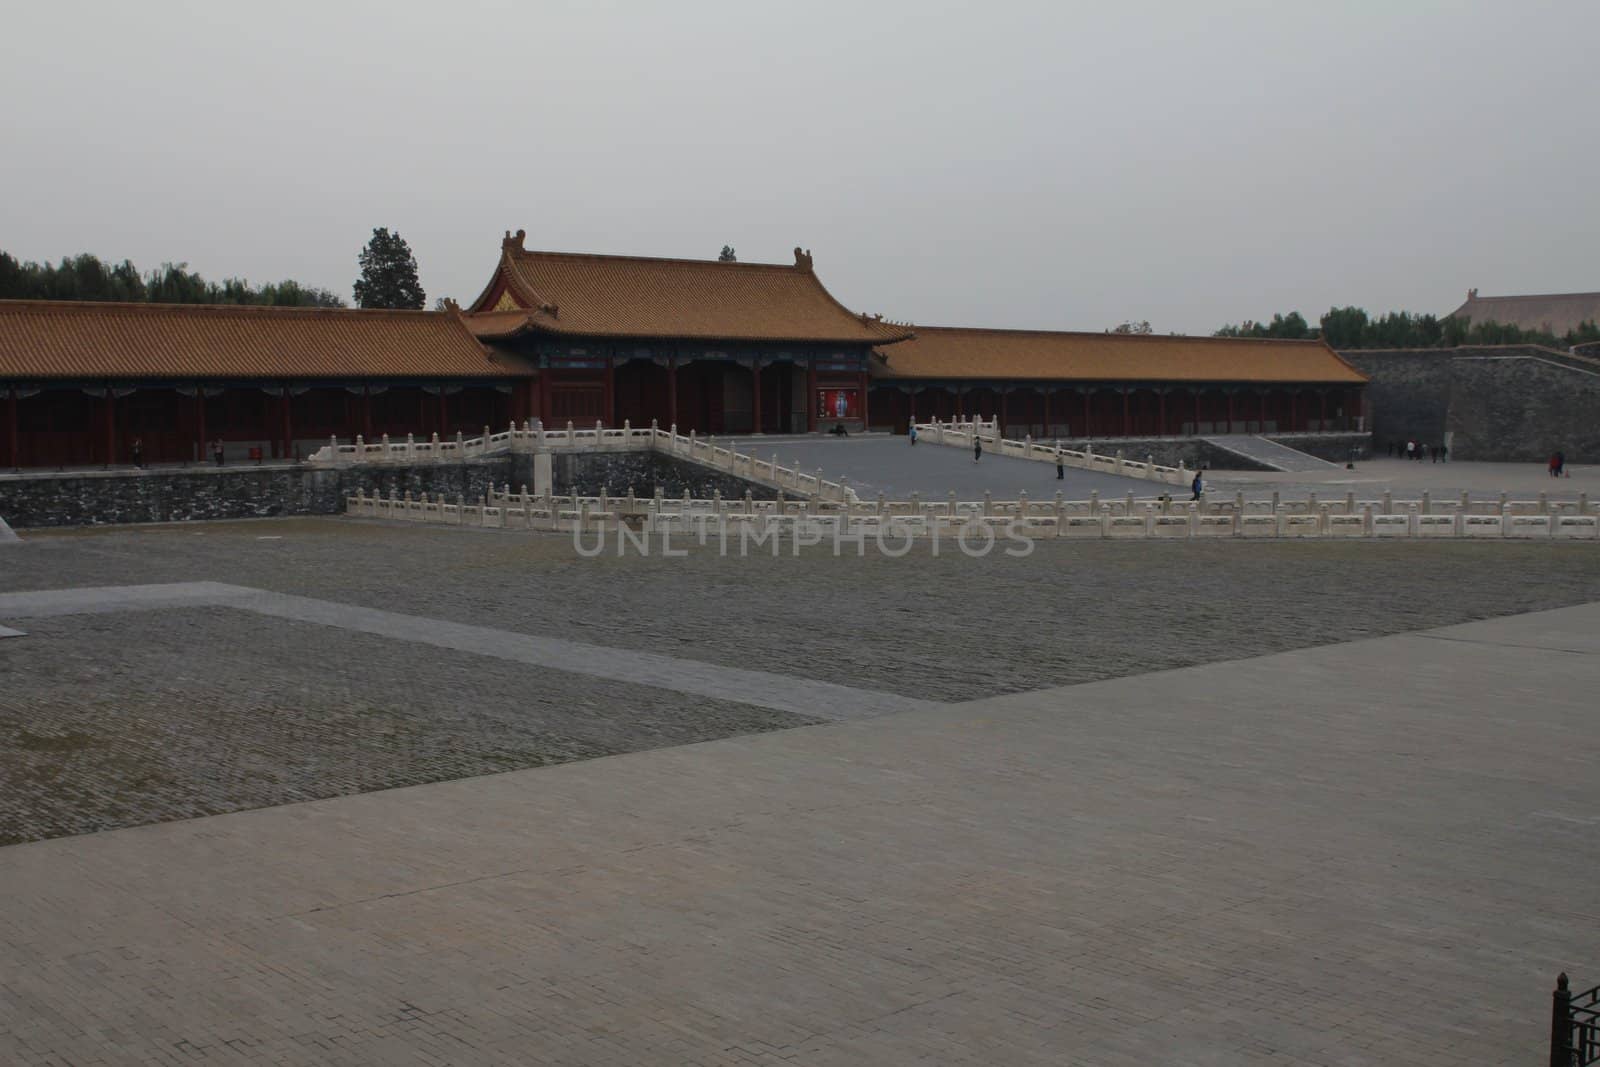 Buildings in the Forbidden city in Beijing